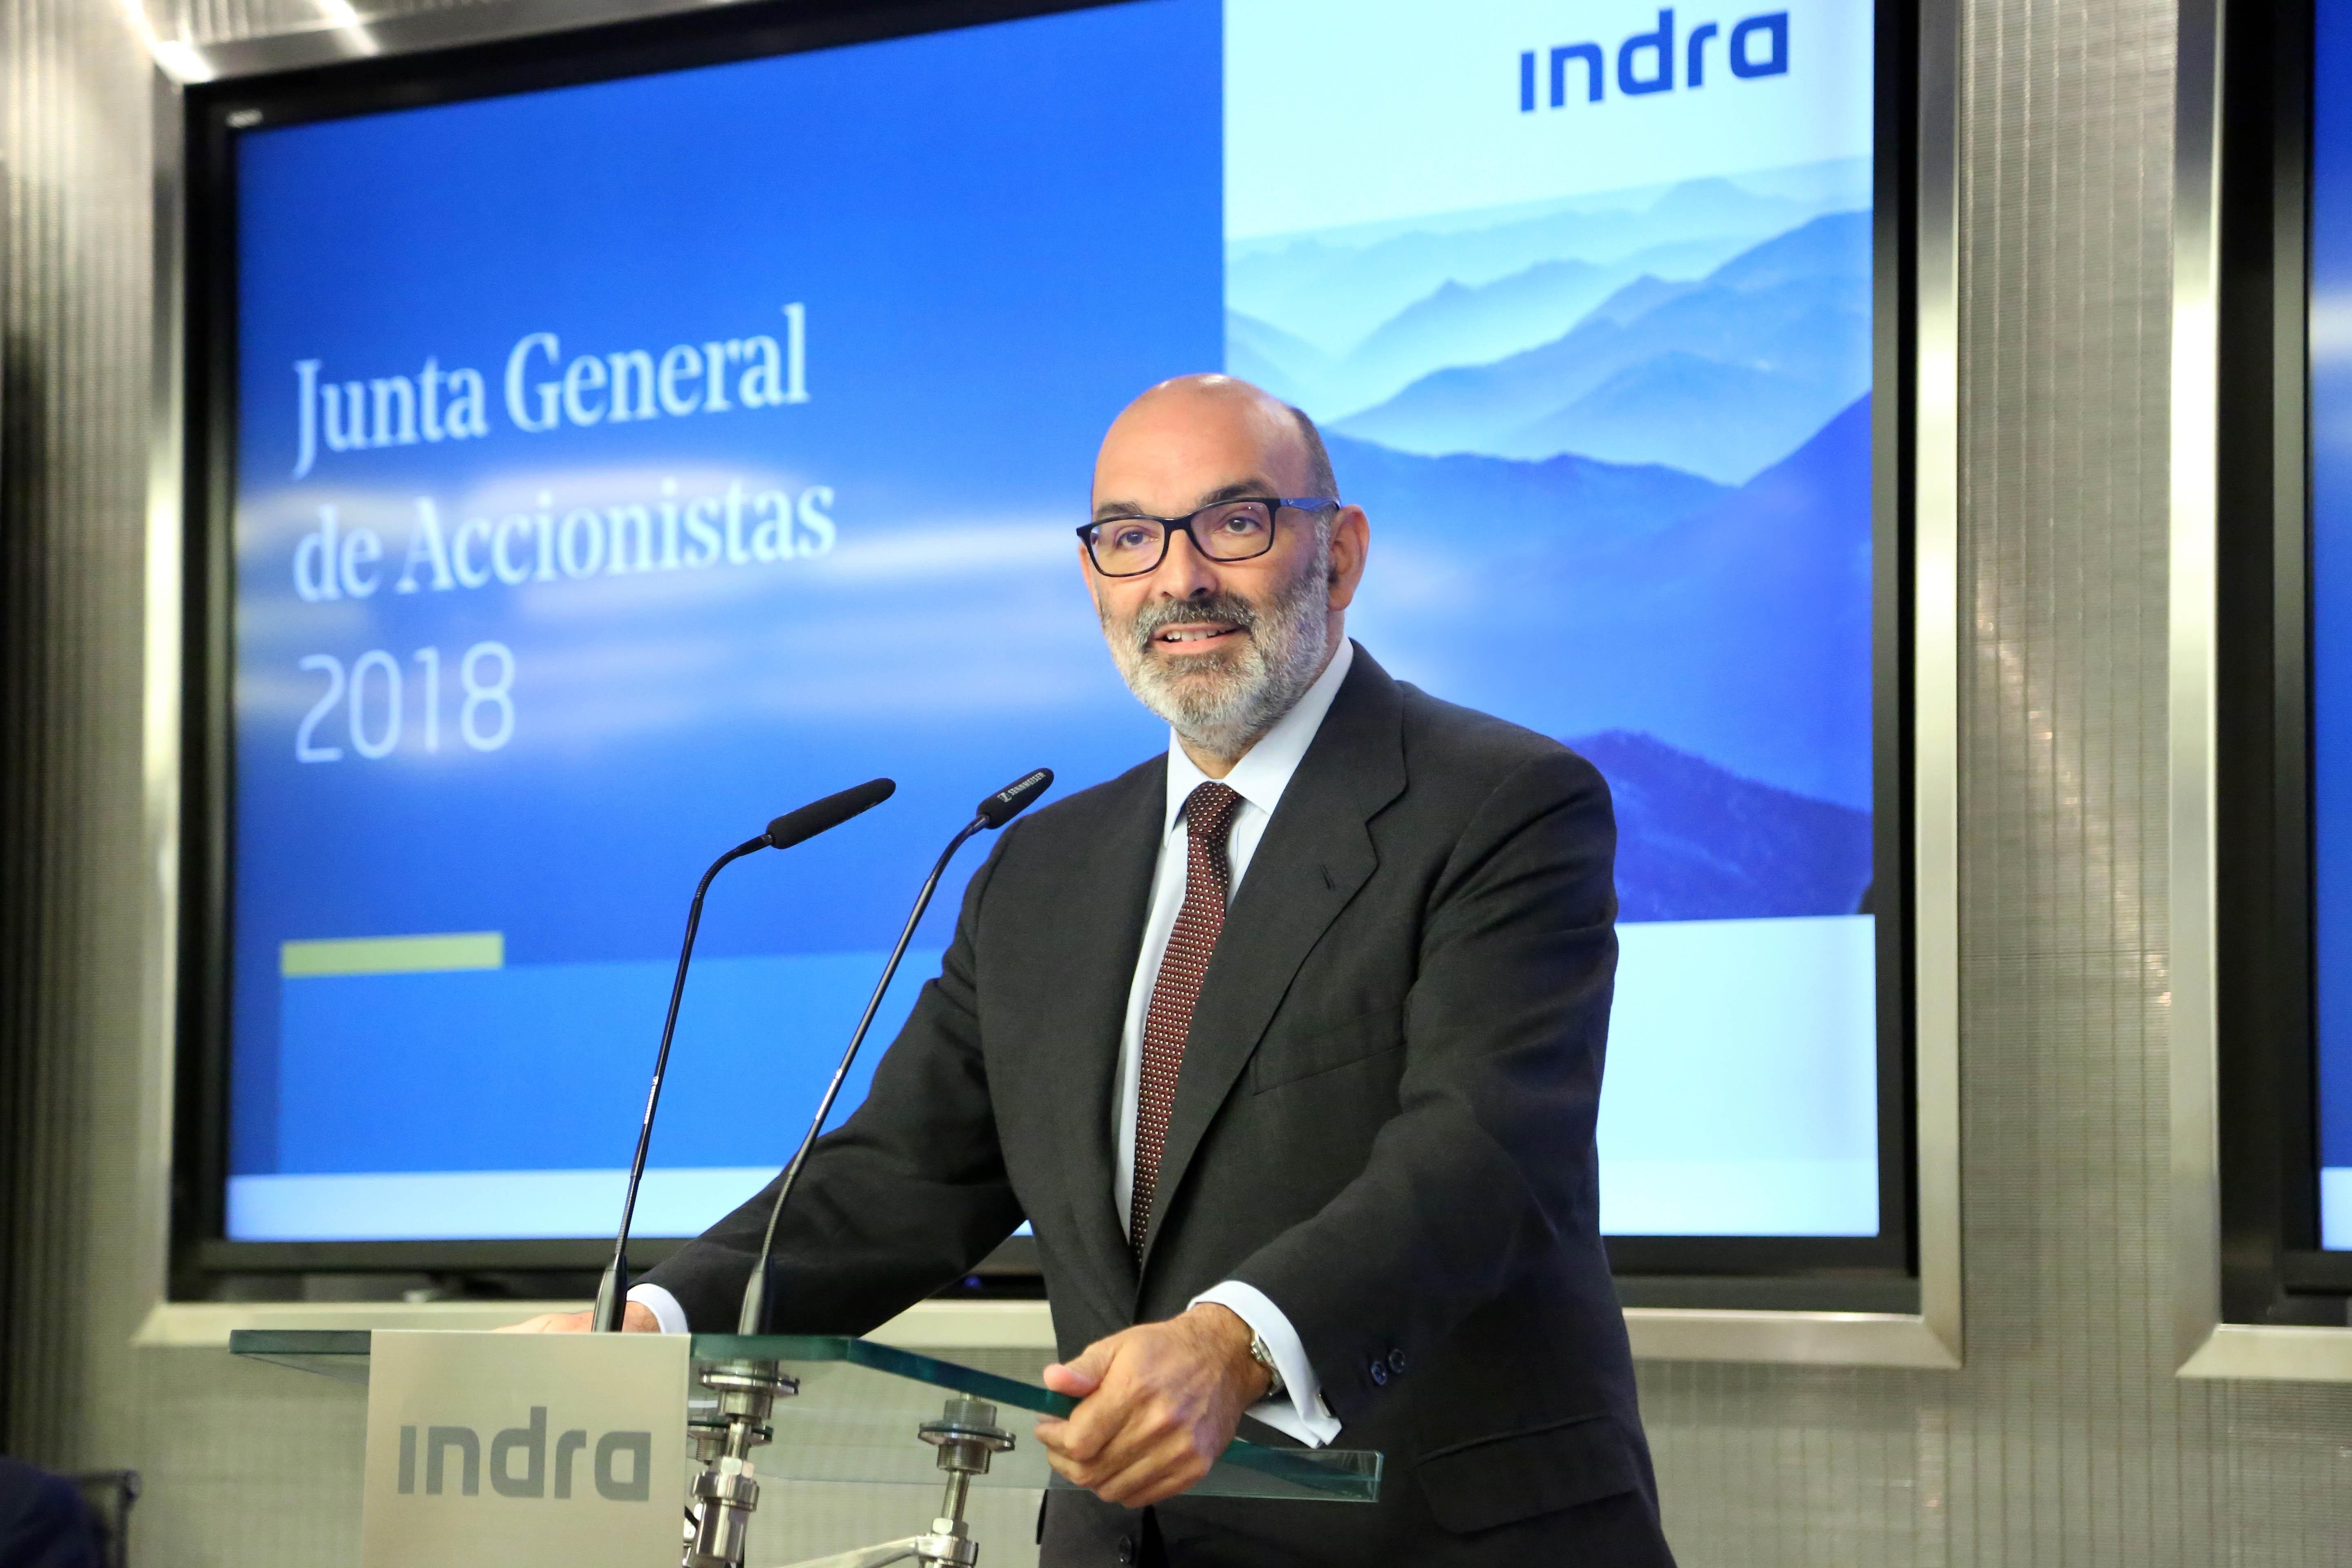 Fernando Abril Martorell, presidente de Indra, en la junta general de accionista . Imagen de archivo- Indra